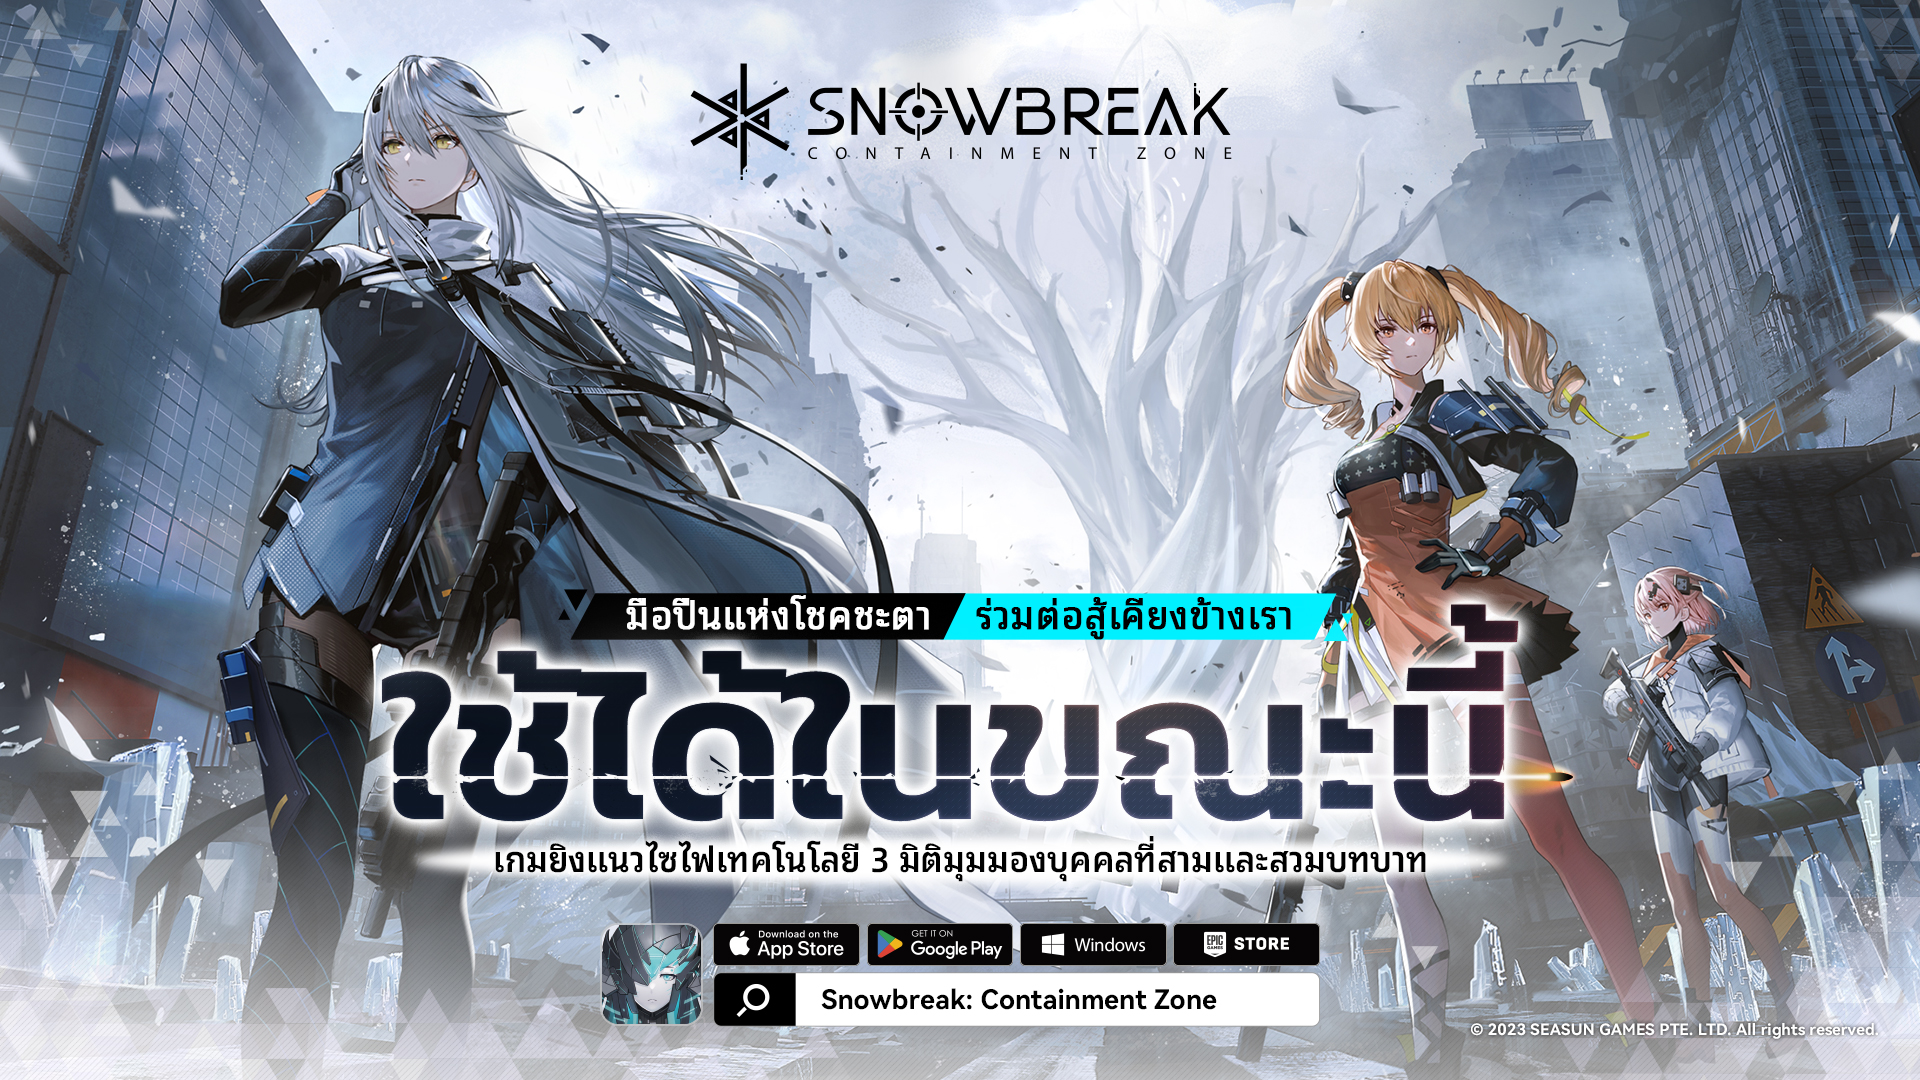 Snowbreak: Containment Zone เปิดให้บริการแล้ววันนี้ พบกับเกมเพลย์สุดร้าวใจ ตัวละคร 5 ดาวสุดปัง ของรางวัลเพียบ!